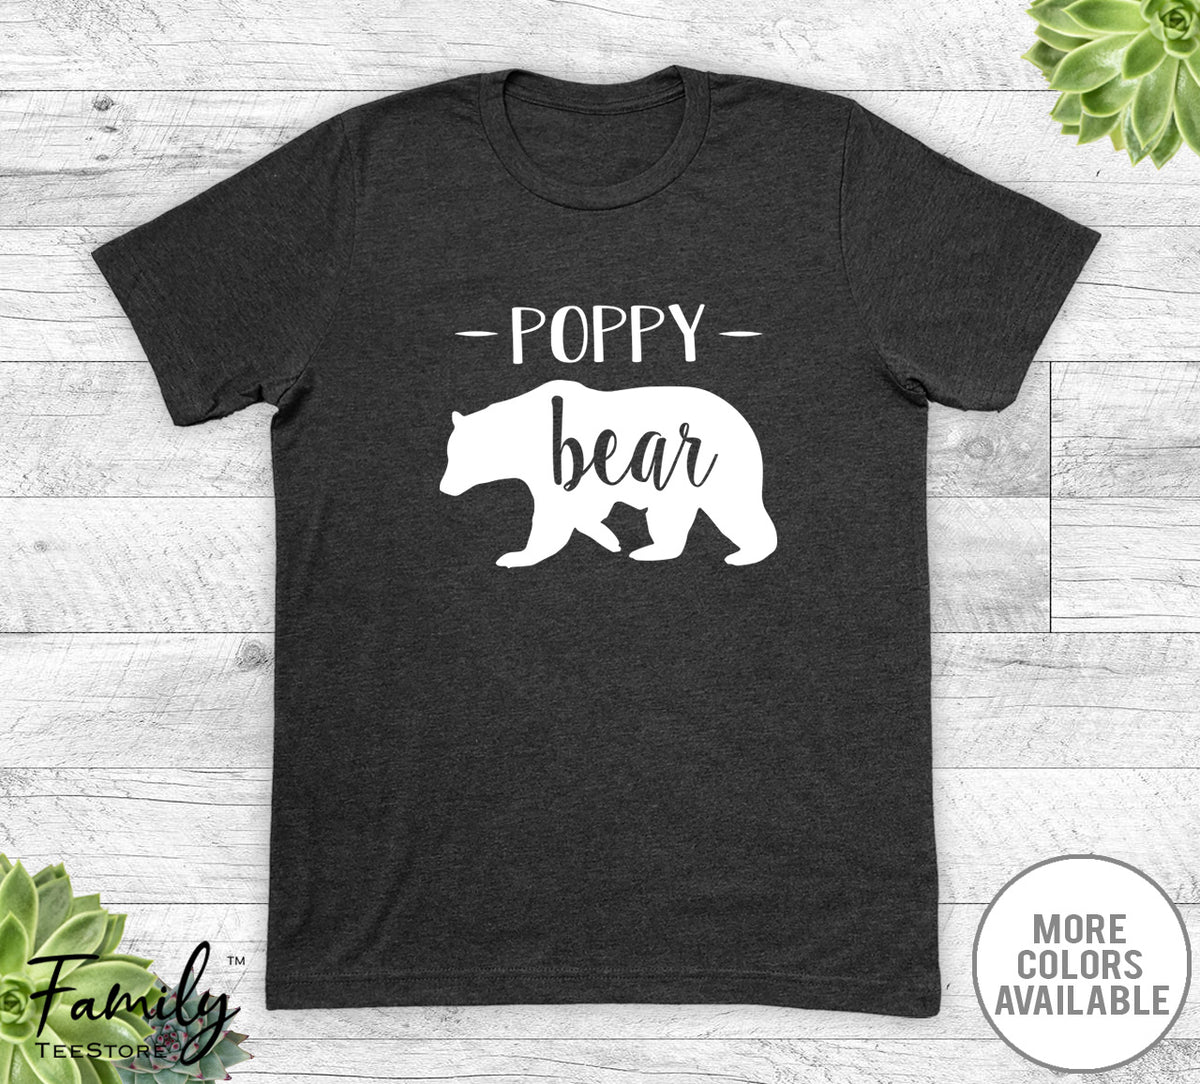 Poppy Bear - Unisex T-shirt - Poppy Shirt - Poppy Gift